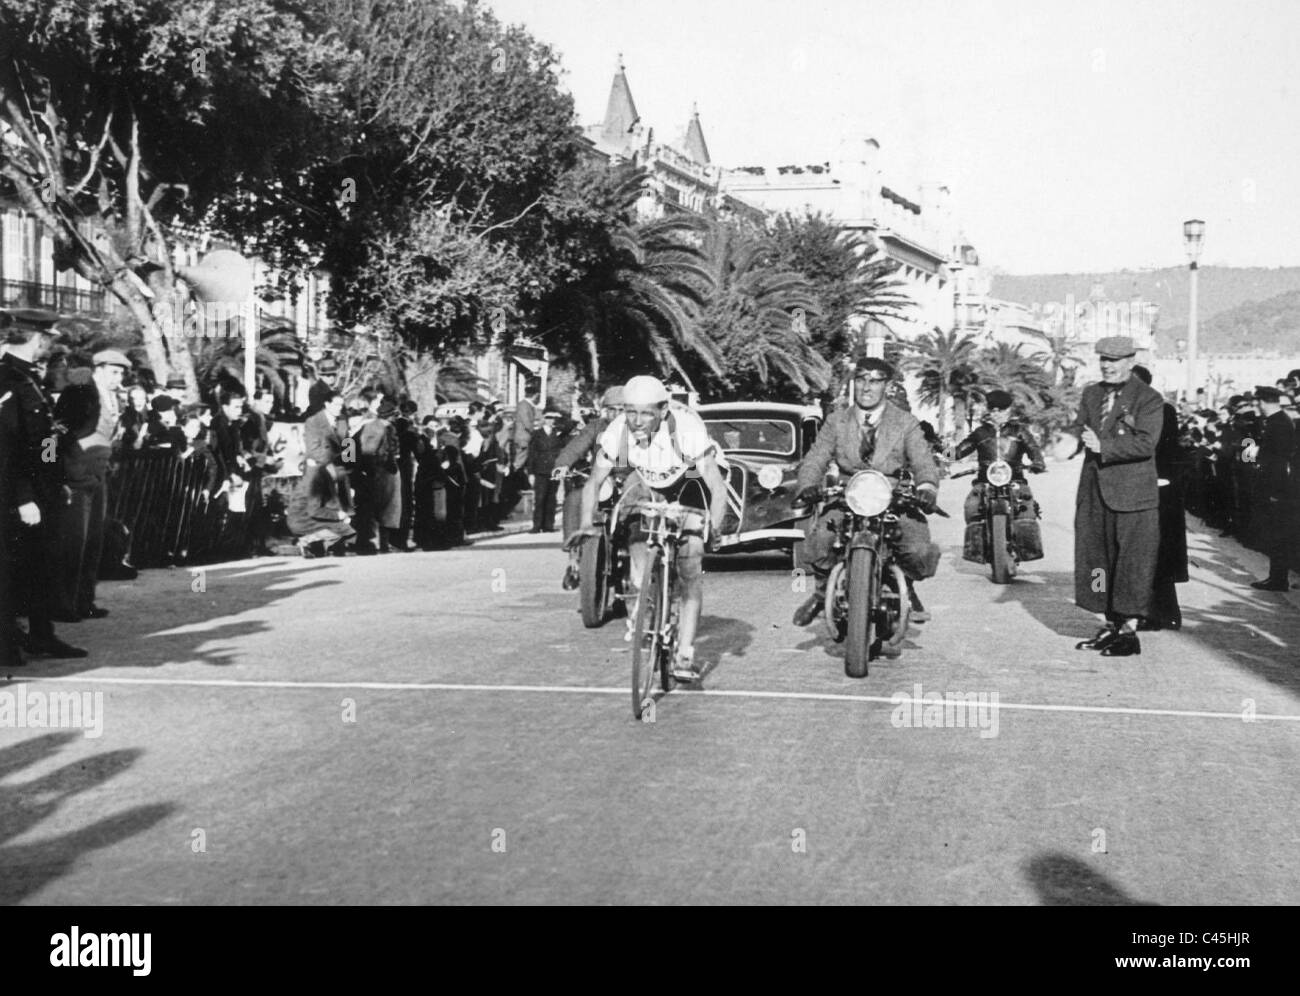 Robert Tanneveau at the cycling race Paris-Nice Stock Photo